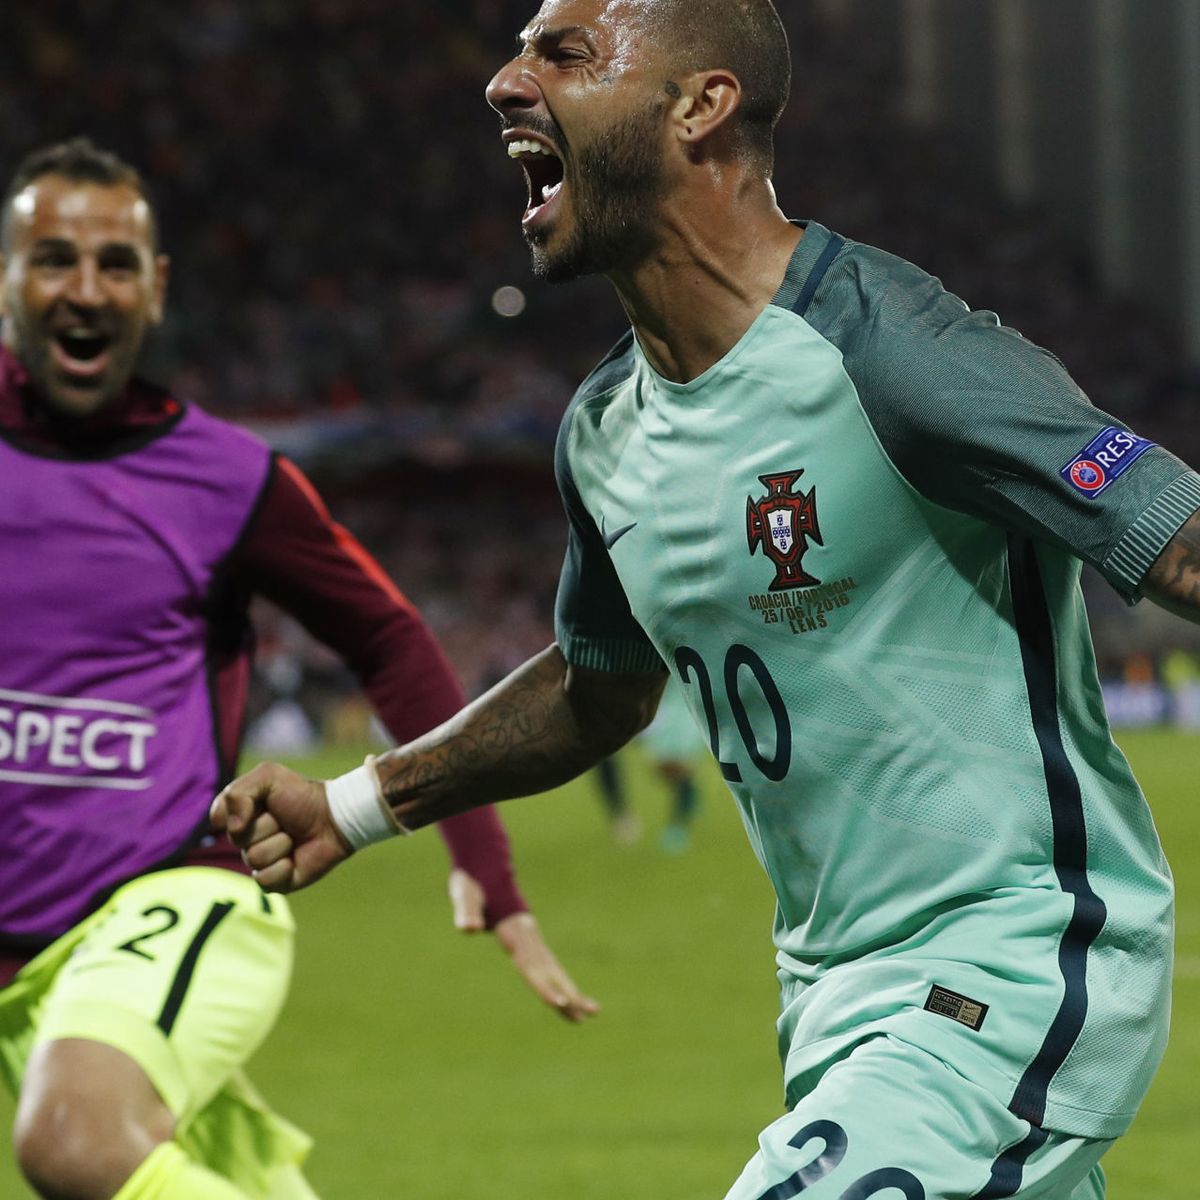 Quaresma classifica Portugal na Eurocopa – DW – 25/06/2016